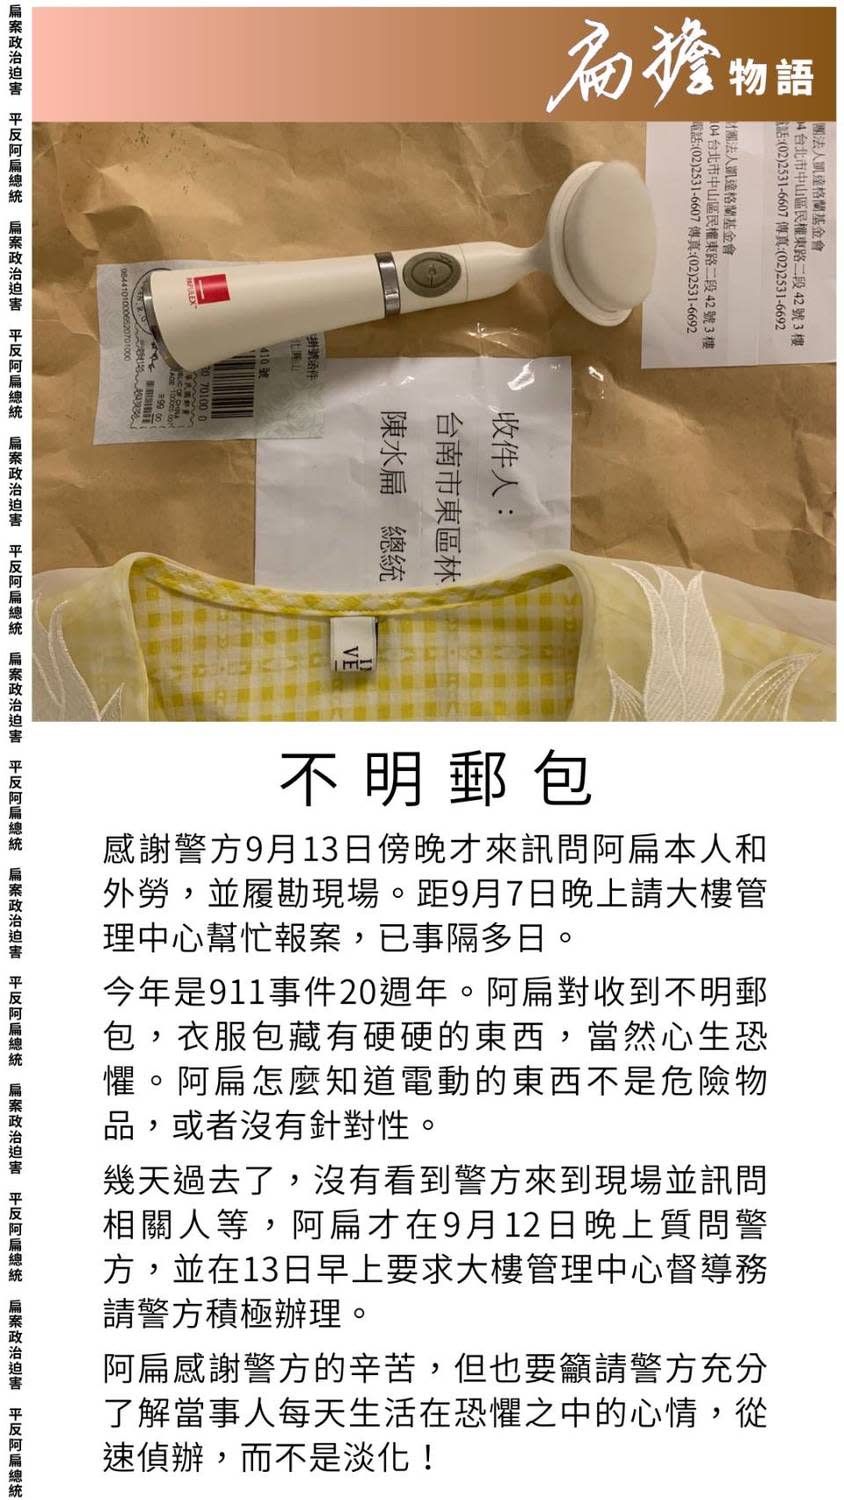 前總統陳水扁今（14）日在社群群組貼出不明郵包照片。疑似一件女性衣服及1個小型電動洗臉機，放在一個已經用過的凱達格蘭基金會A3信封袋裡。   圖：翻攝陳水扁社群群族